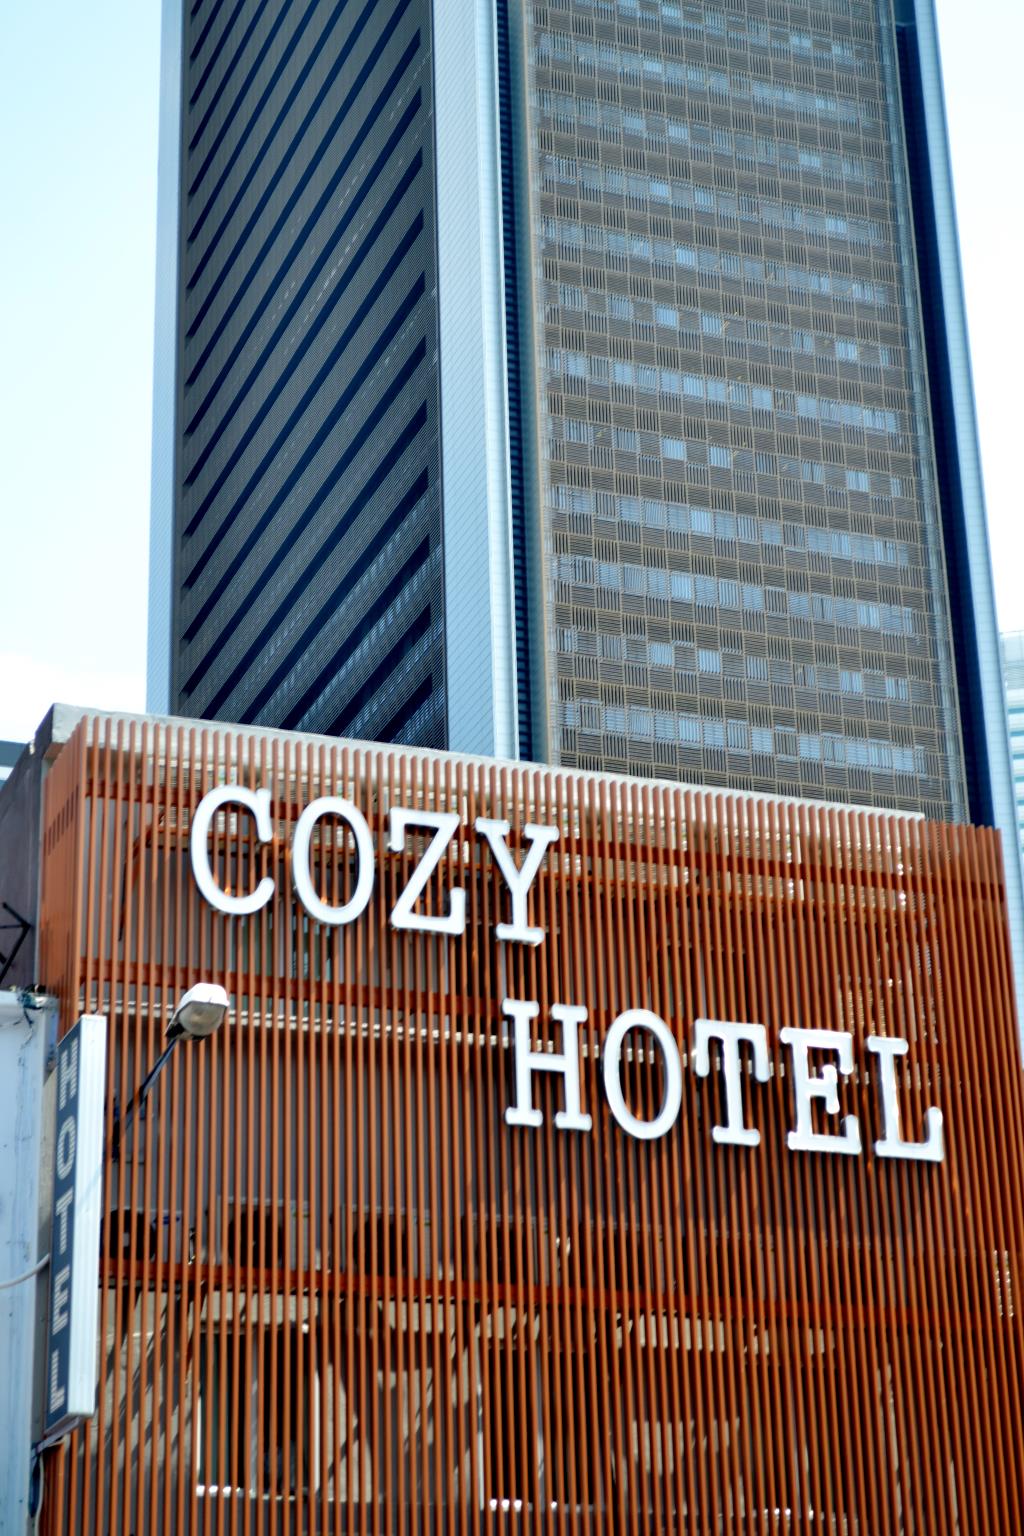 Cozy Hotel @ KL Sentral